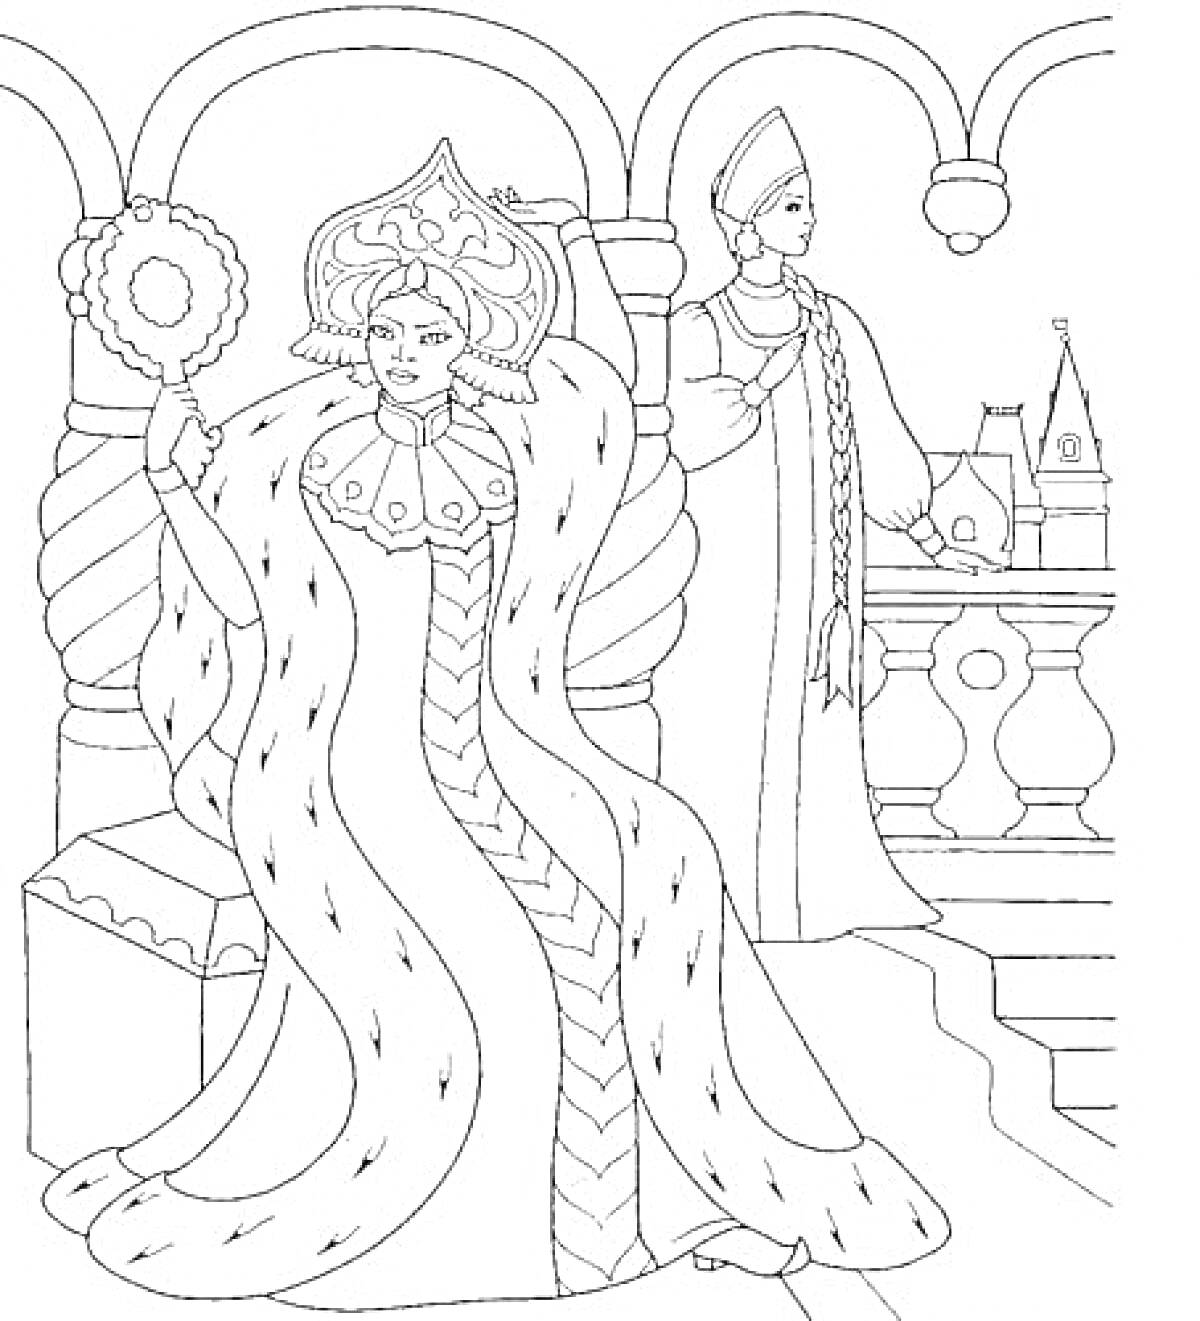 Царица с зеркалом и служанка на балконе в сказочном замке